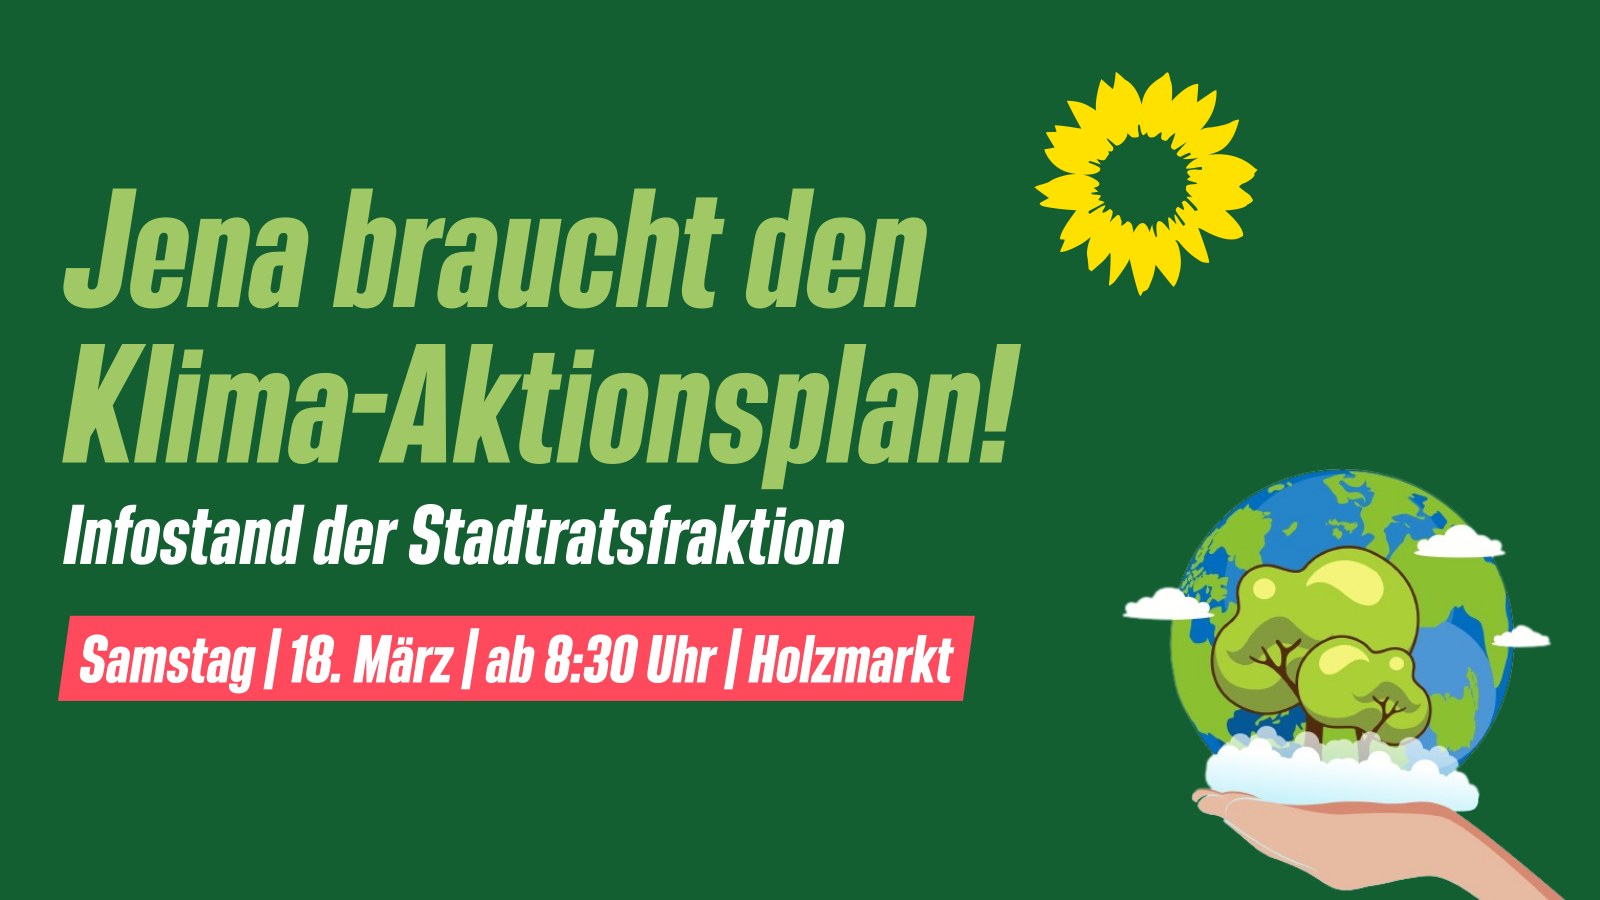 Text: Jena braucht den Klima-Aktionsplan! Infostand der Stadtratsfraktion. Samstag | 18. März | ab 8:30 Uhr | Holzmarkt. Hintergrund: Dunkelgrün, davor als Zeichnung eine Hand, die die Erde hält.